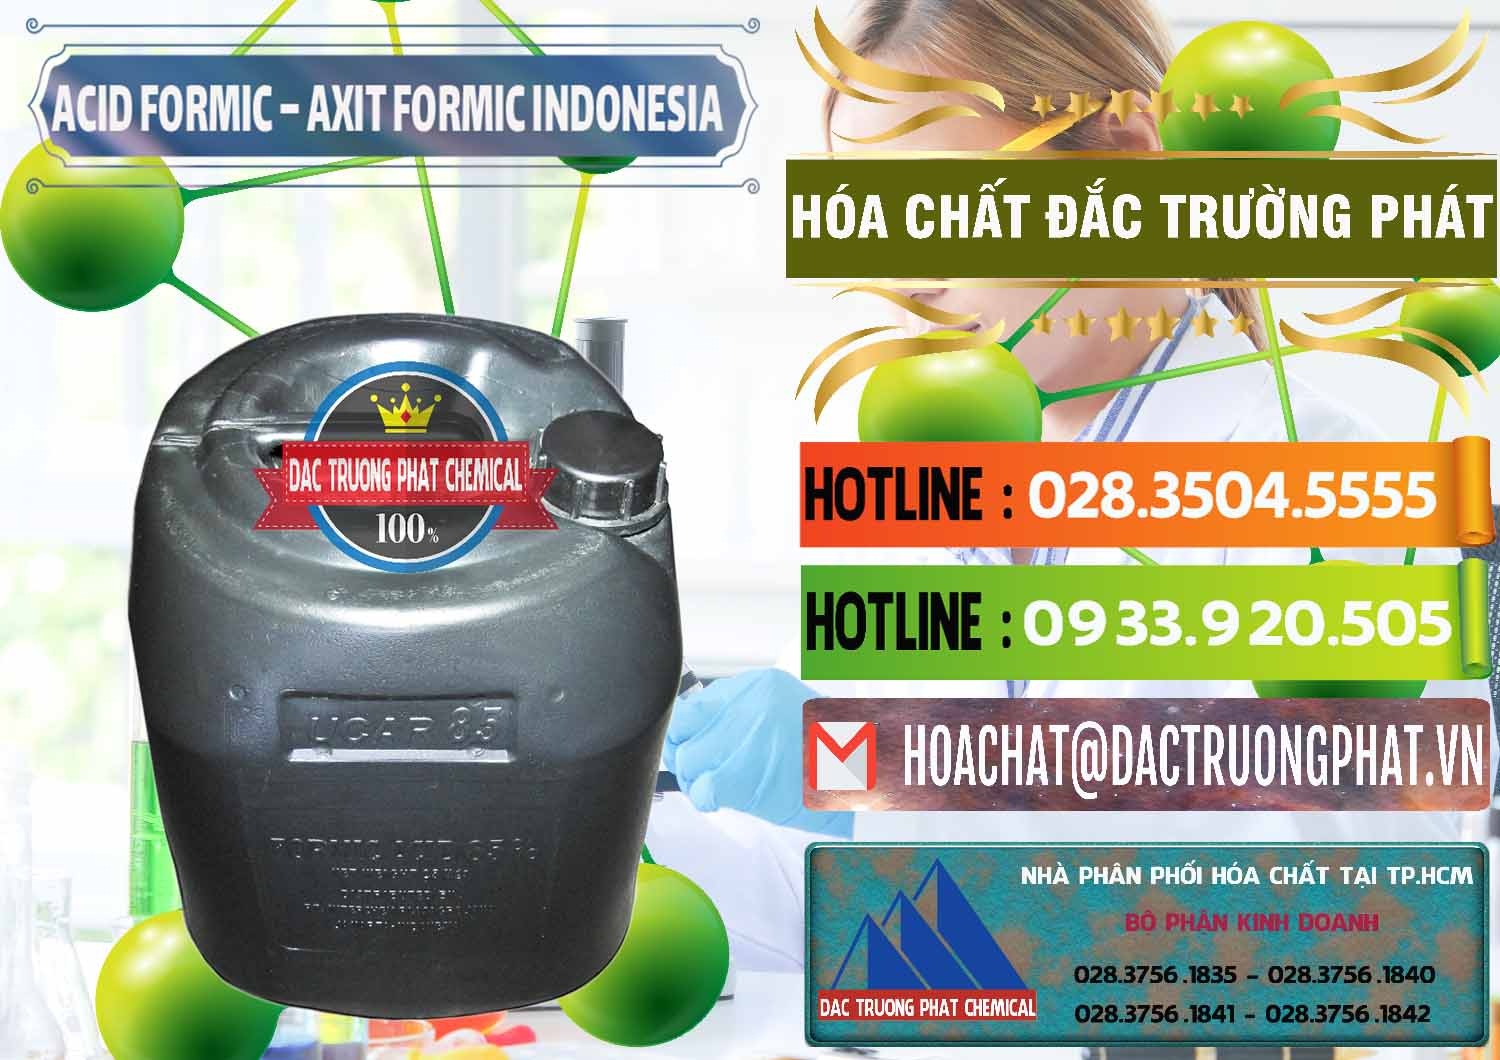 Bán Acid Formic - Axit Formic Indonesia - 0026 - Đơn vị cung ứng - phân phối hóa chất tại TP.HCM - cungcaphoachat.com.vn